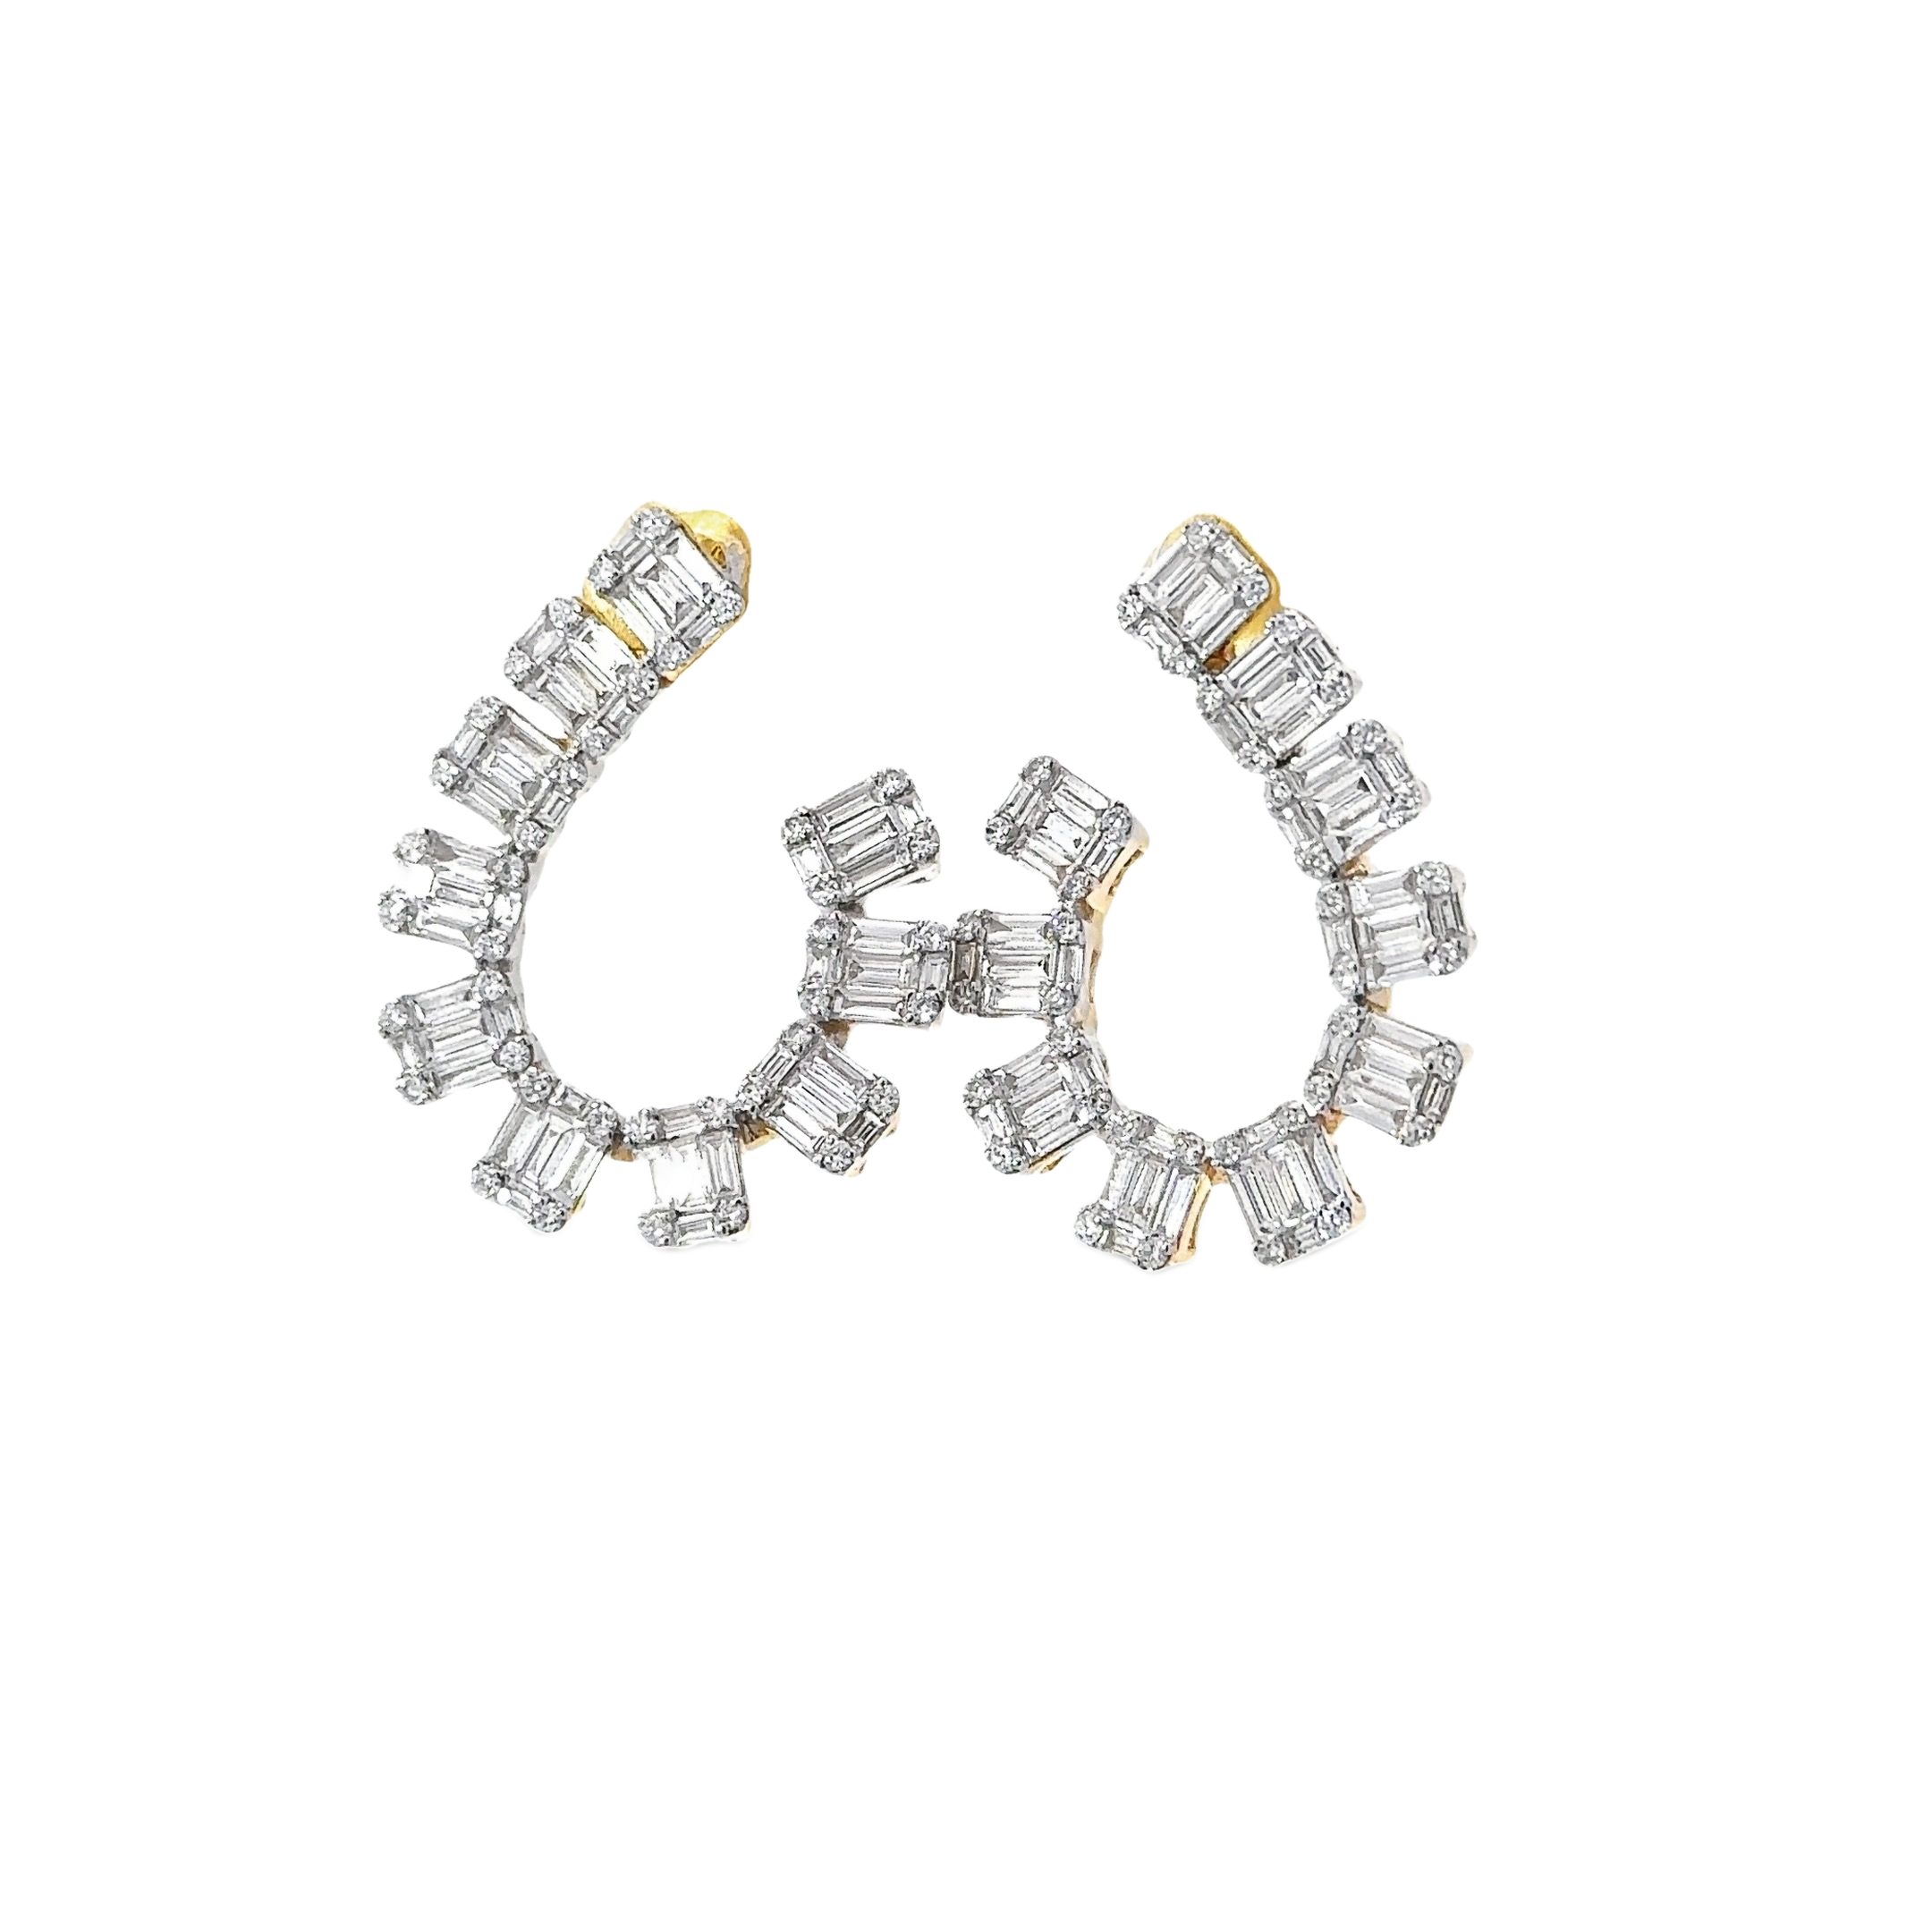 Luxurious Dual-Tone Baguette Diamond Hoop Earrings